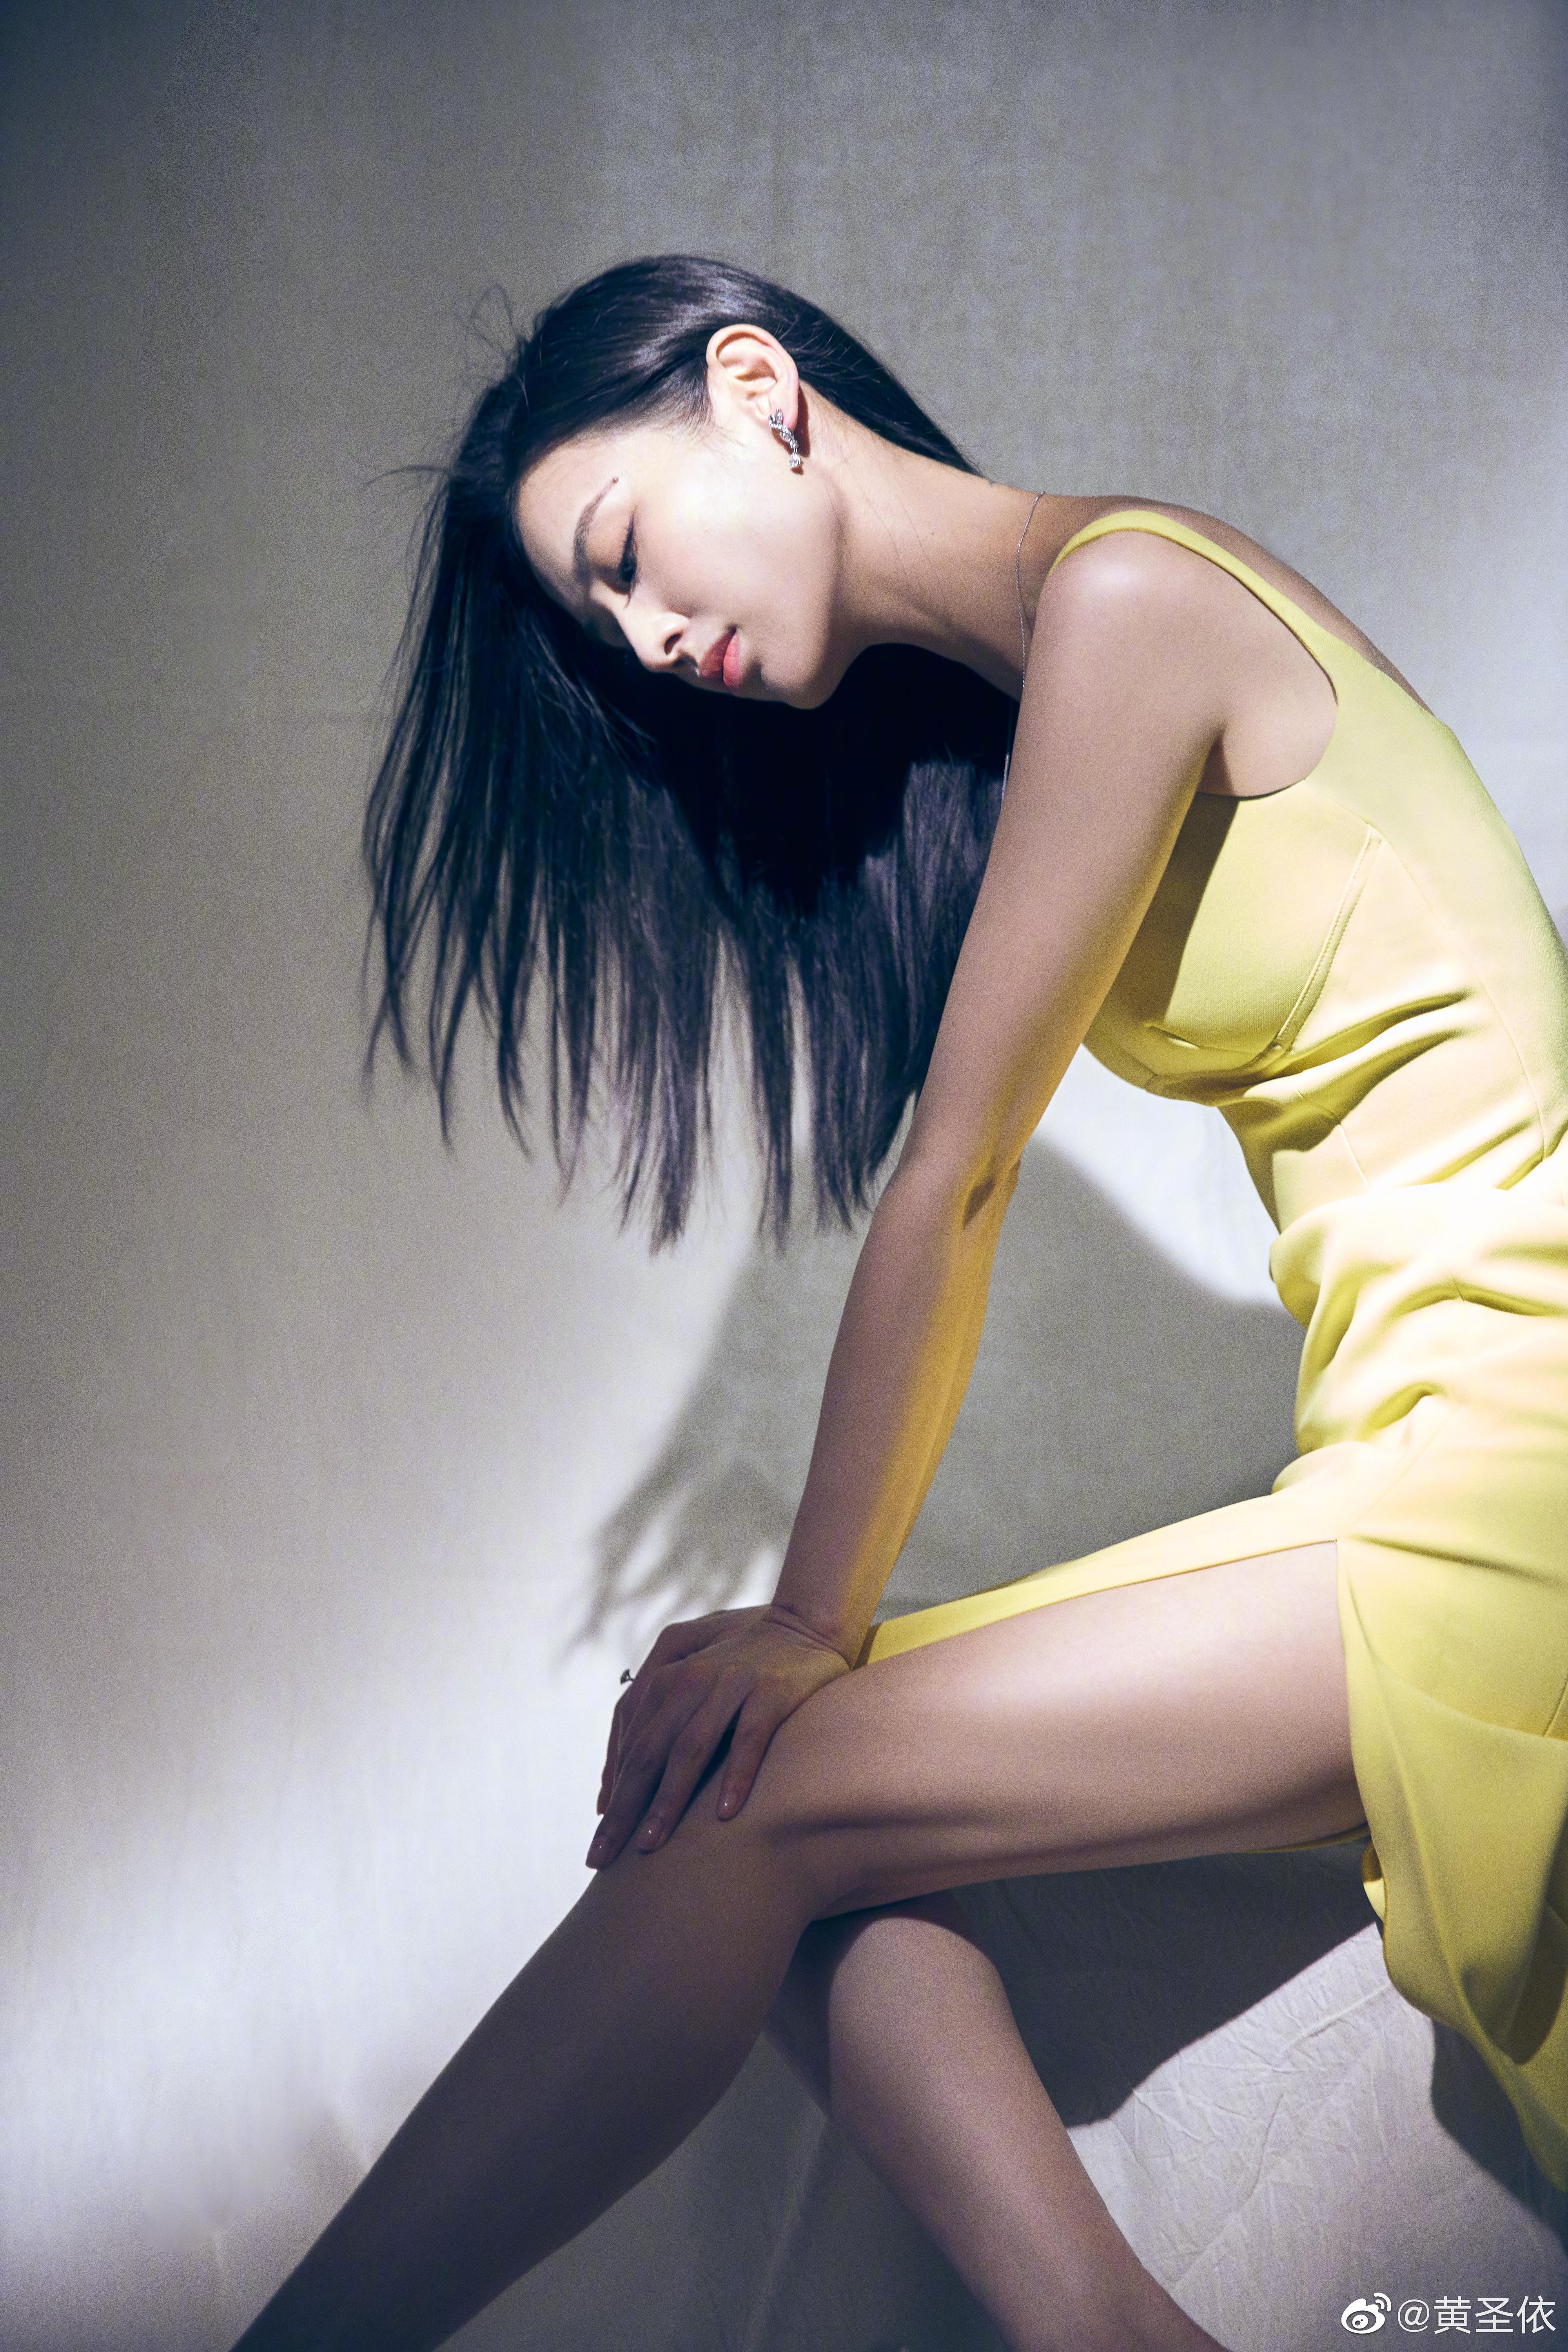 黄圣依身穿淡黄长裙优雅大方 秀美腿肌肉线条超具美感,